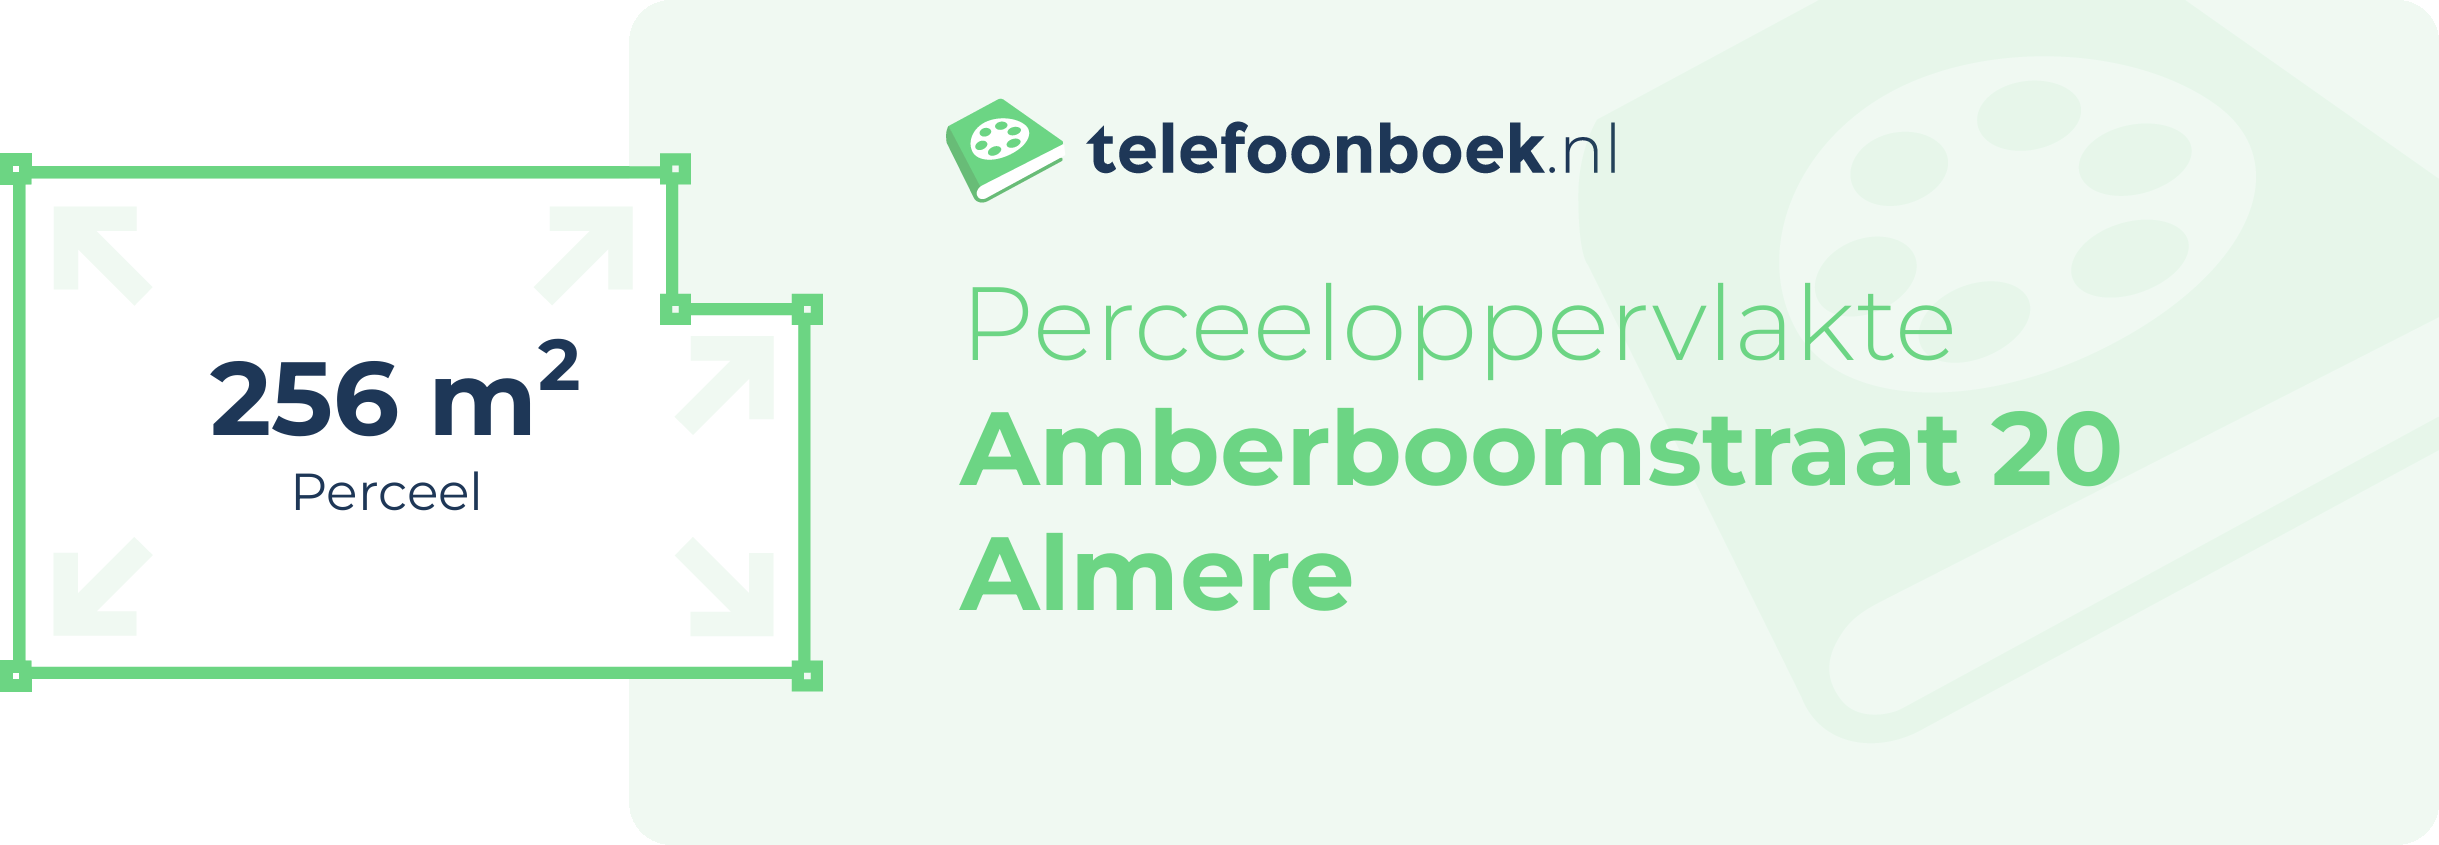 Perceeloppervlakte Amberboomstraat 20 Almere